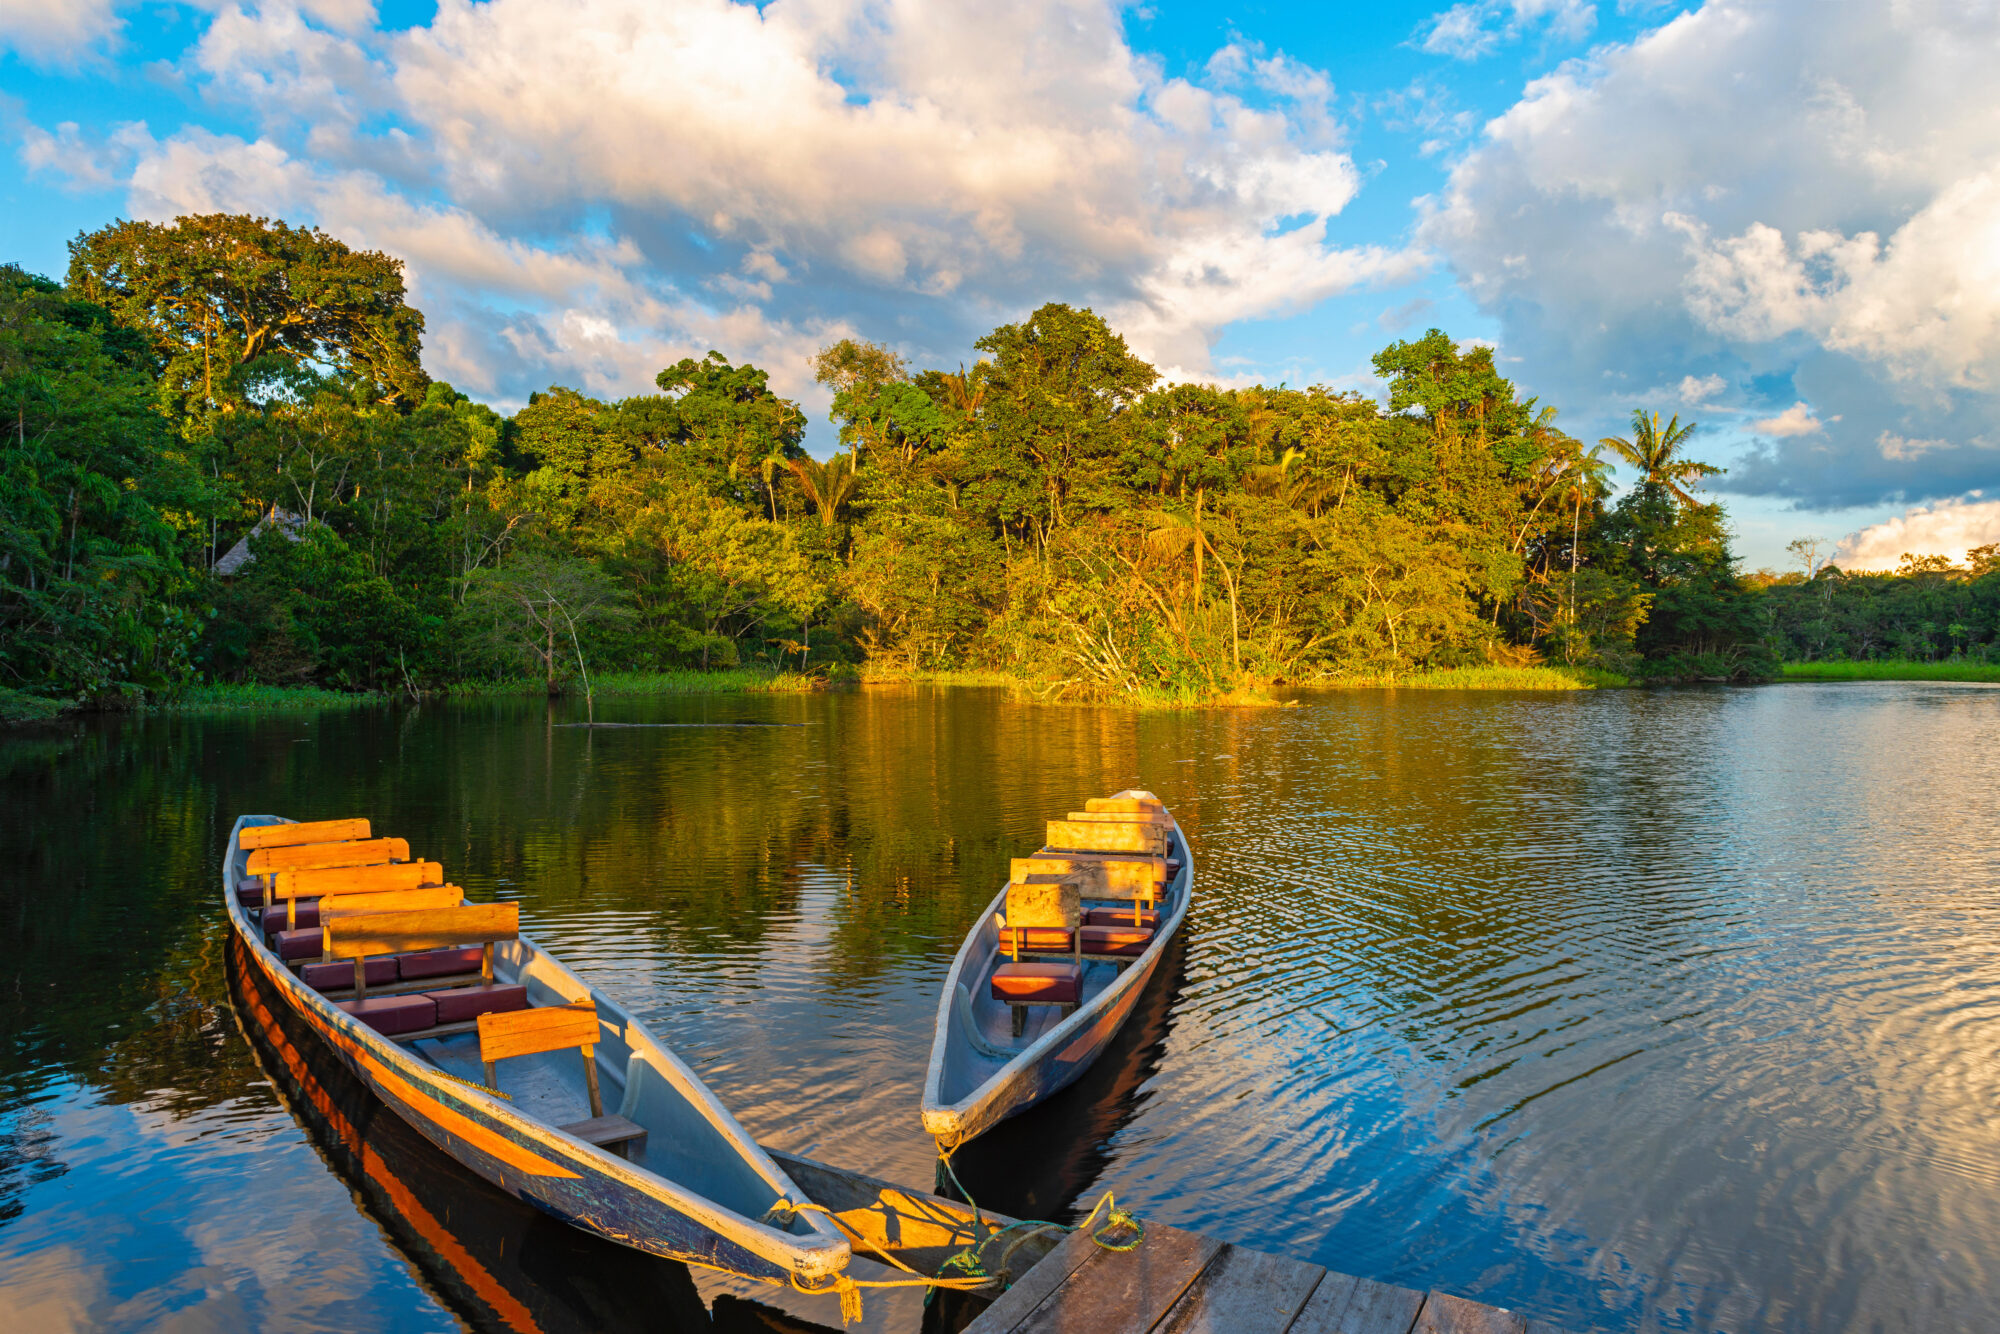 Duas canoas de madeira tradicionais na bacia do rio Amazonas.